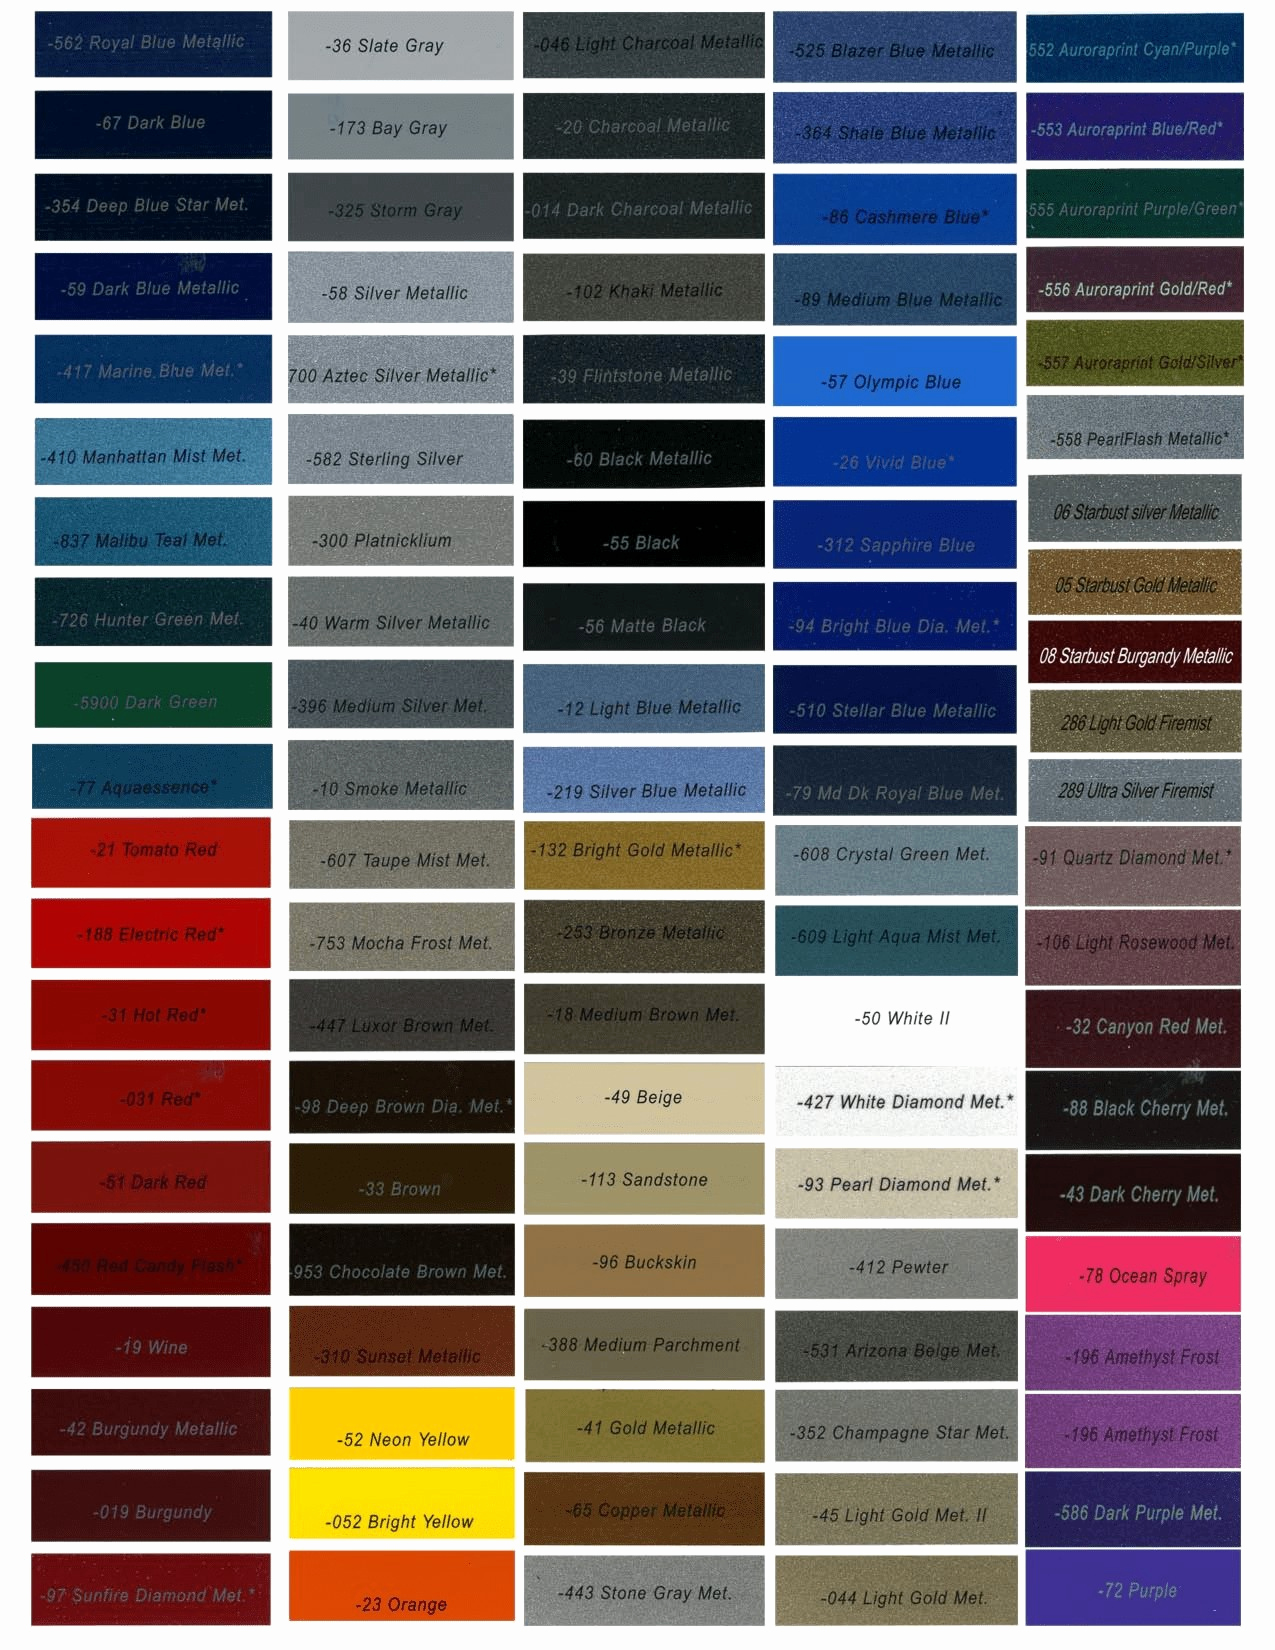 Paint Shop Colour Chart Automotive Color Paint Chart To Choose Color